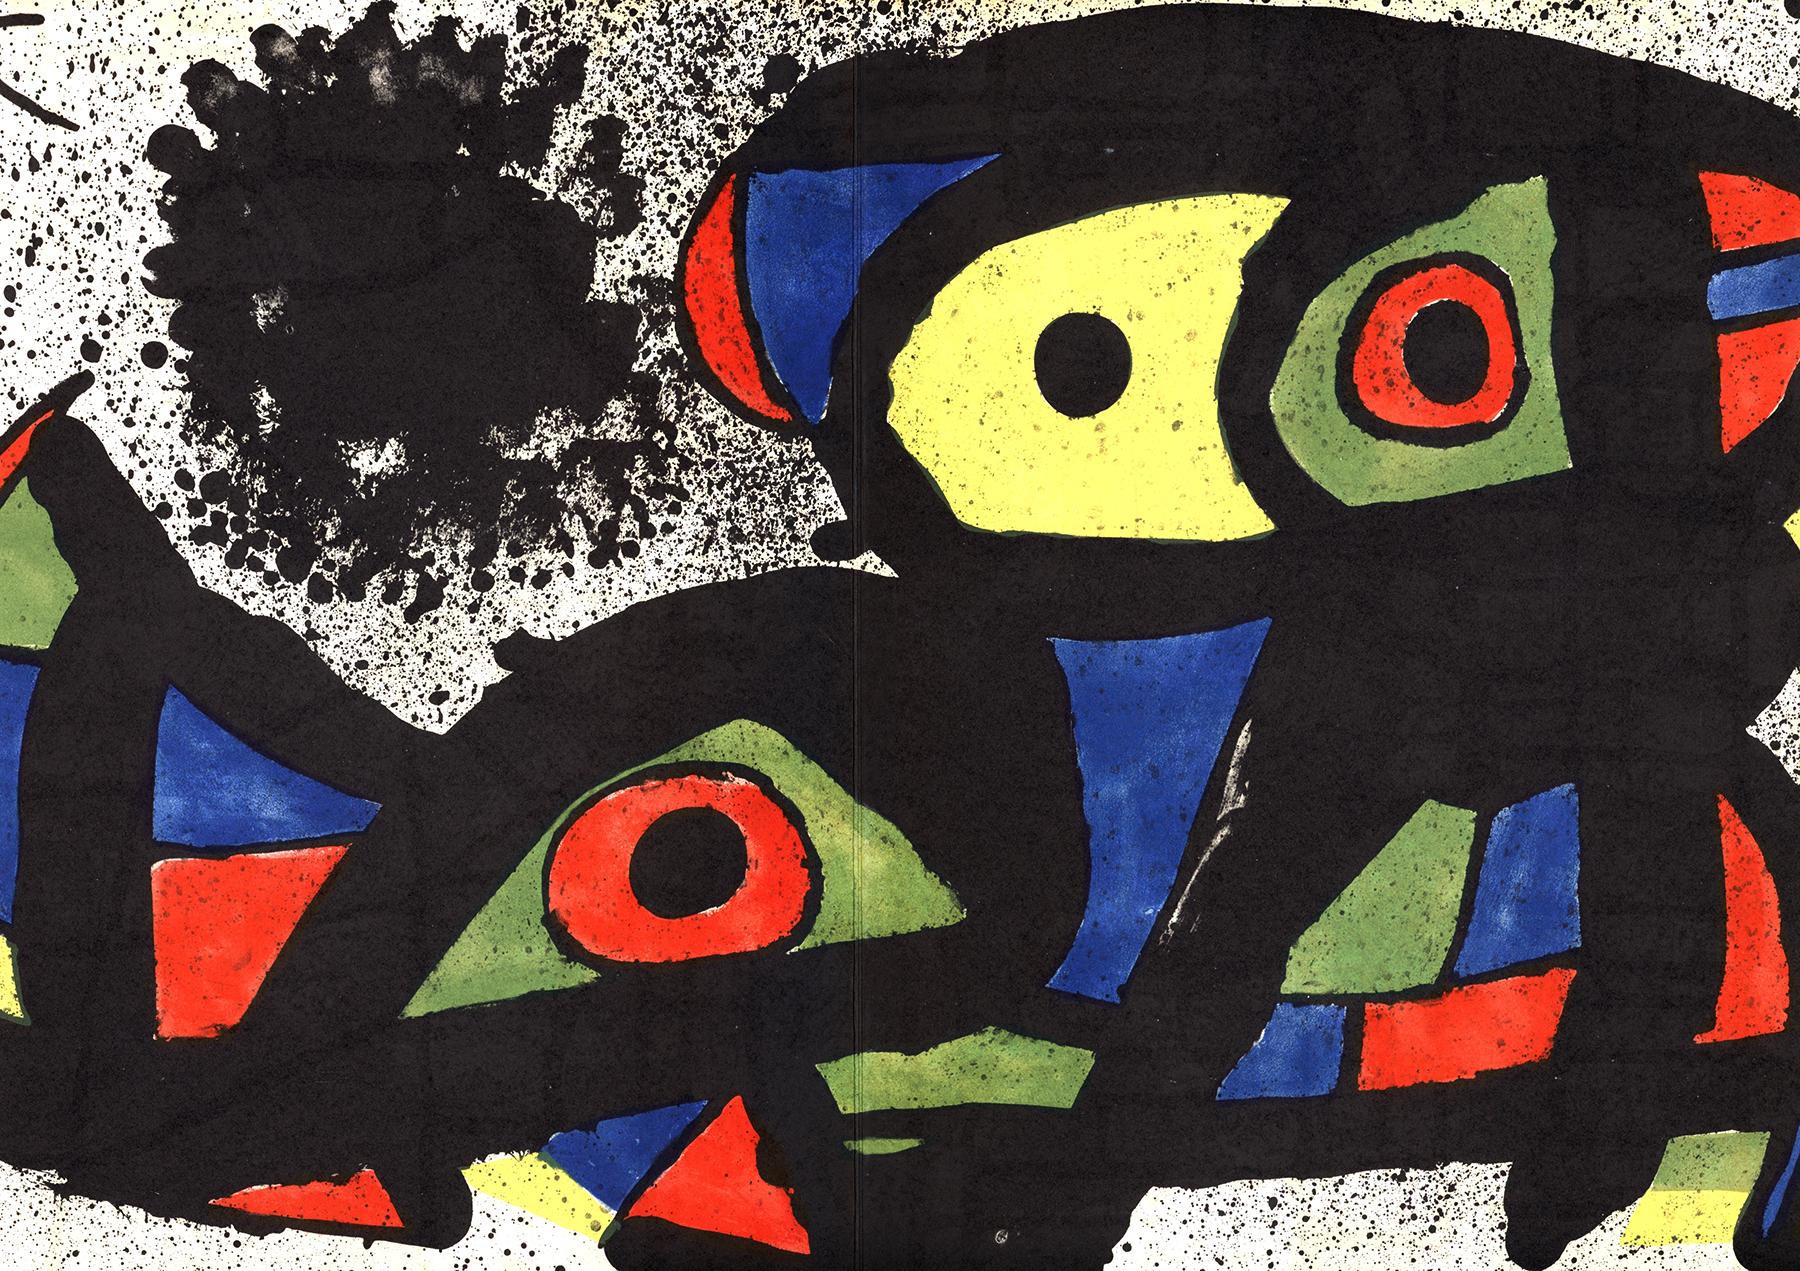 1970er Joan Miró Lithographie:
Lithografische Beilage des Ausstellungskatalogs von 1979, der anlässlich der Ausstellung von Miro in der Galerie Maeght in Paris veröffentlicht wurde.

12,5 x 17,75 Zoll. 

Sehr guter Gesamtzustand; geringfügige